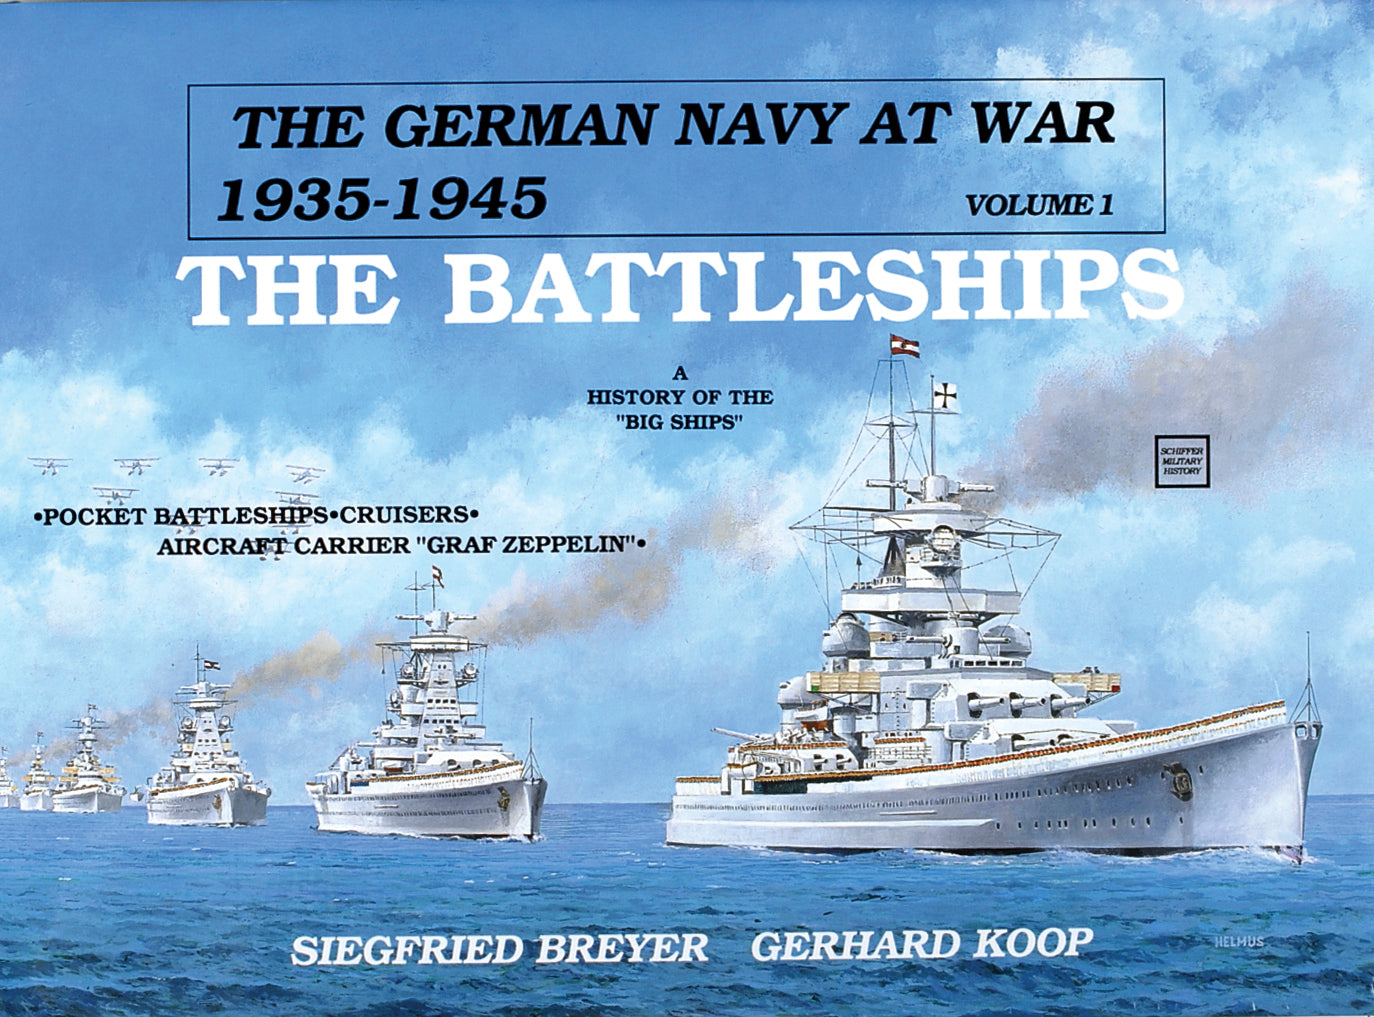 The German Navy at War